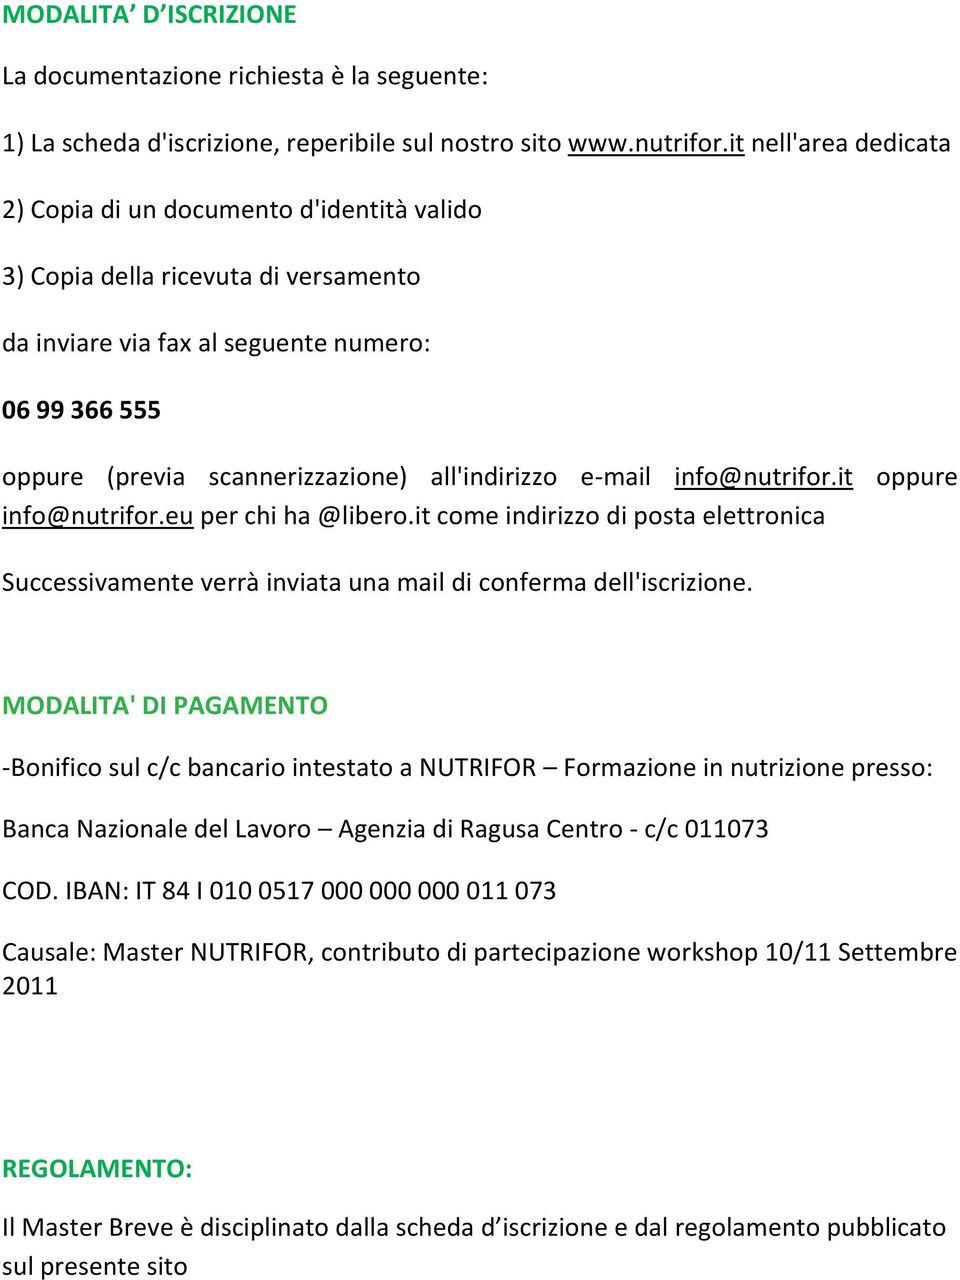 all'indirizzo e-mail info@nutrifor.it oppure info@nutrifor.eu per chi ha @libero.it come indirizzo di posta elettronica Successivamente verrà inviata una mail di conferma dell'iscrizione.